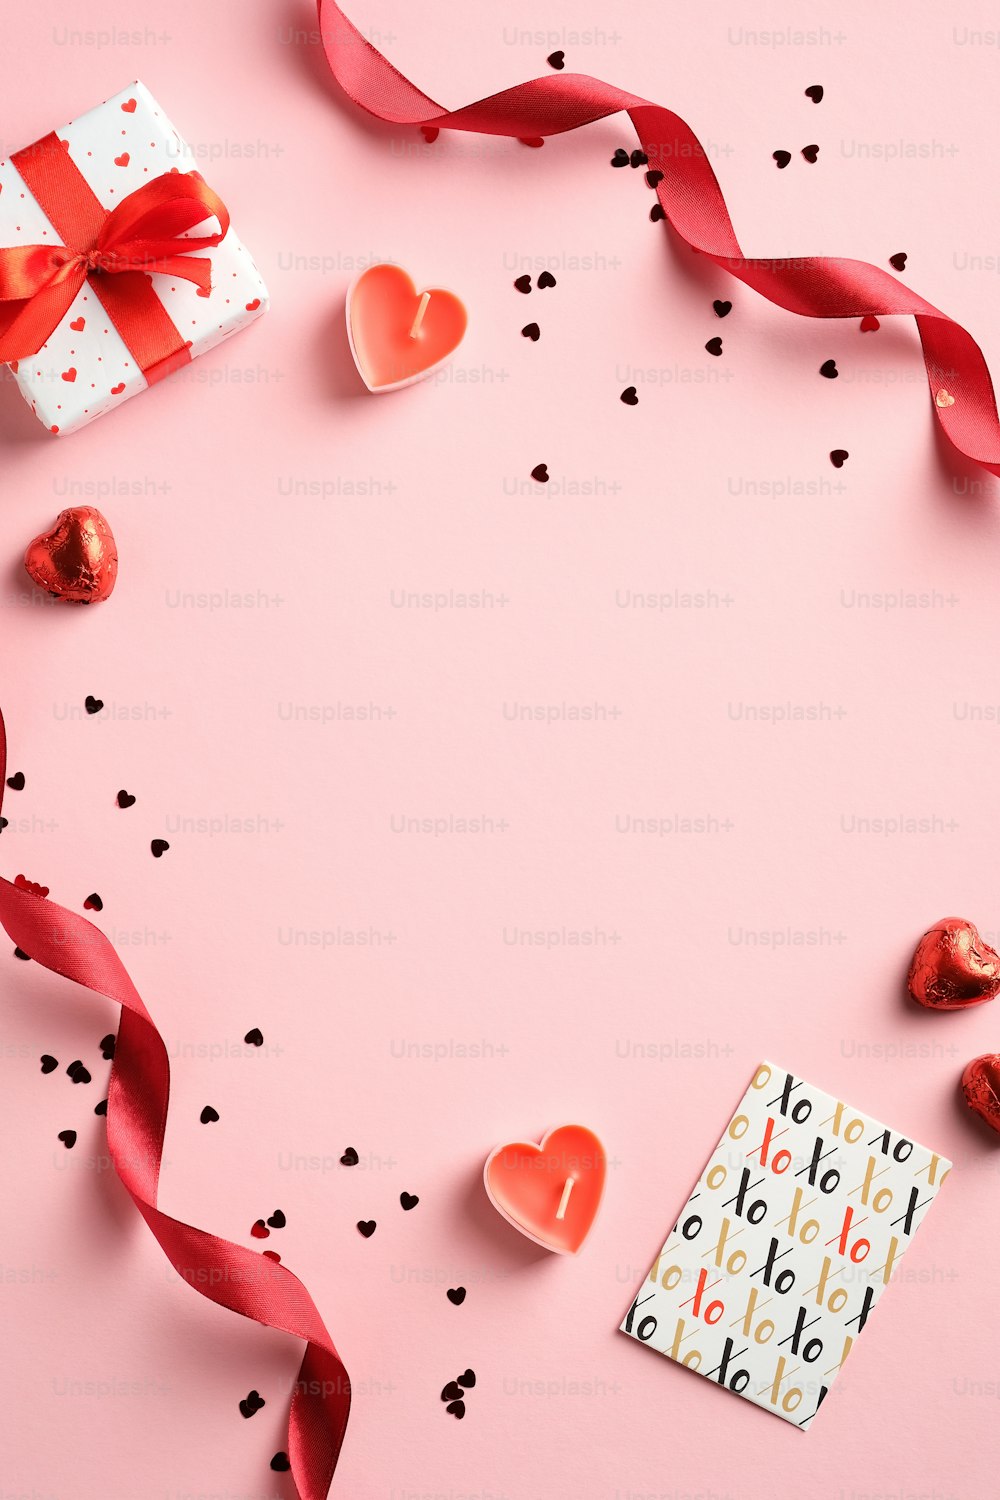 Concepto de feliz día de San Valentín. Diseño creativo con cinta roja, caja de regalo, tarjeta de felicitación, confeti sobre fondo rosa. Vista superior, plano.